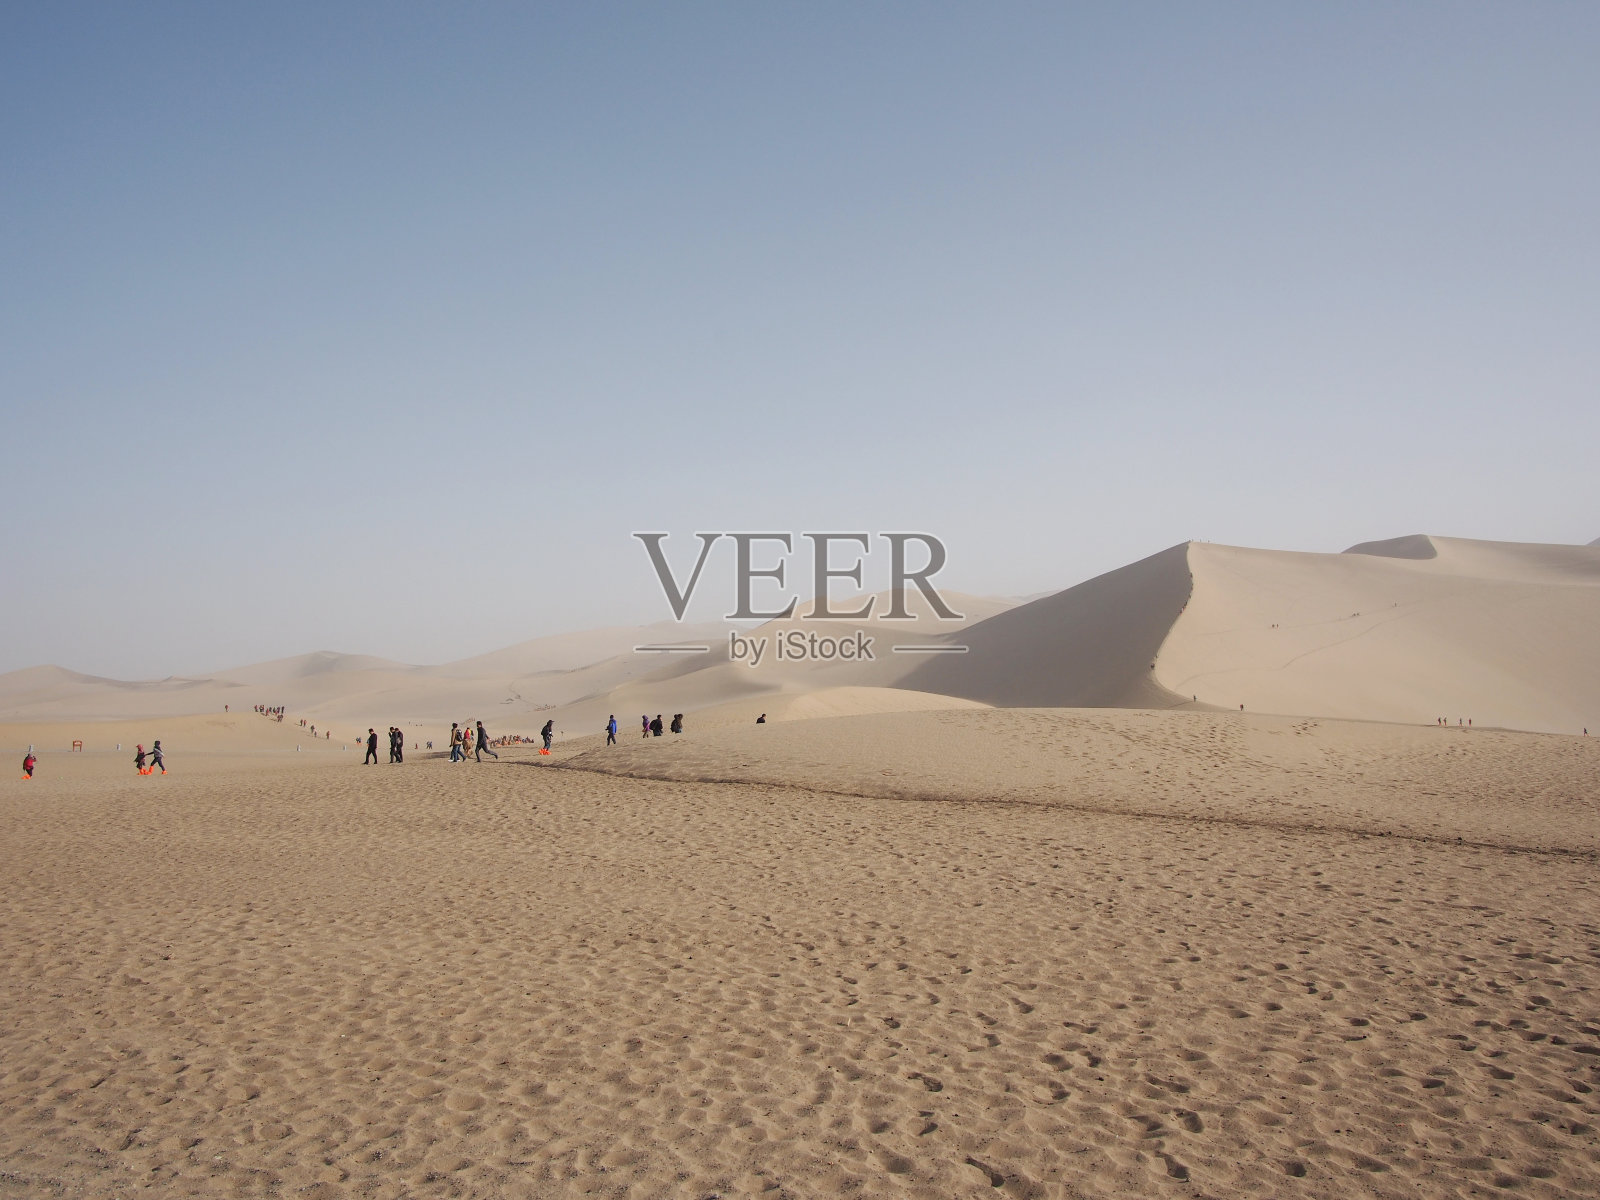 敦煌沙漠丝绸之路的一部分。在中国甘肃敦煌旅游。2013年10月14日照片摄影图片